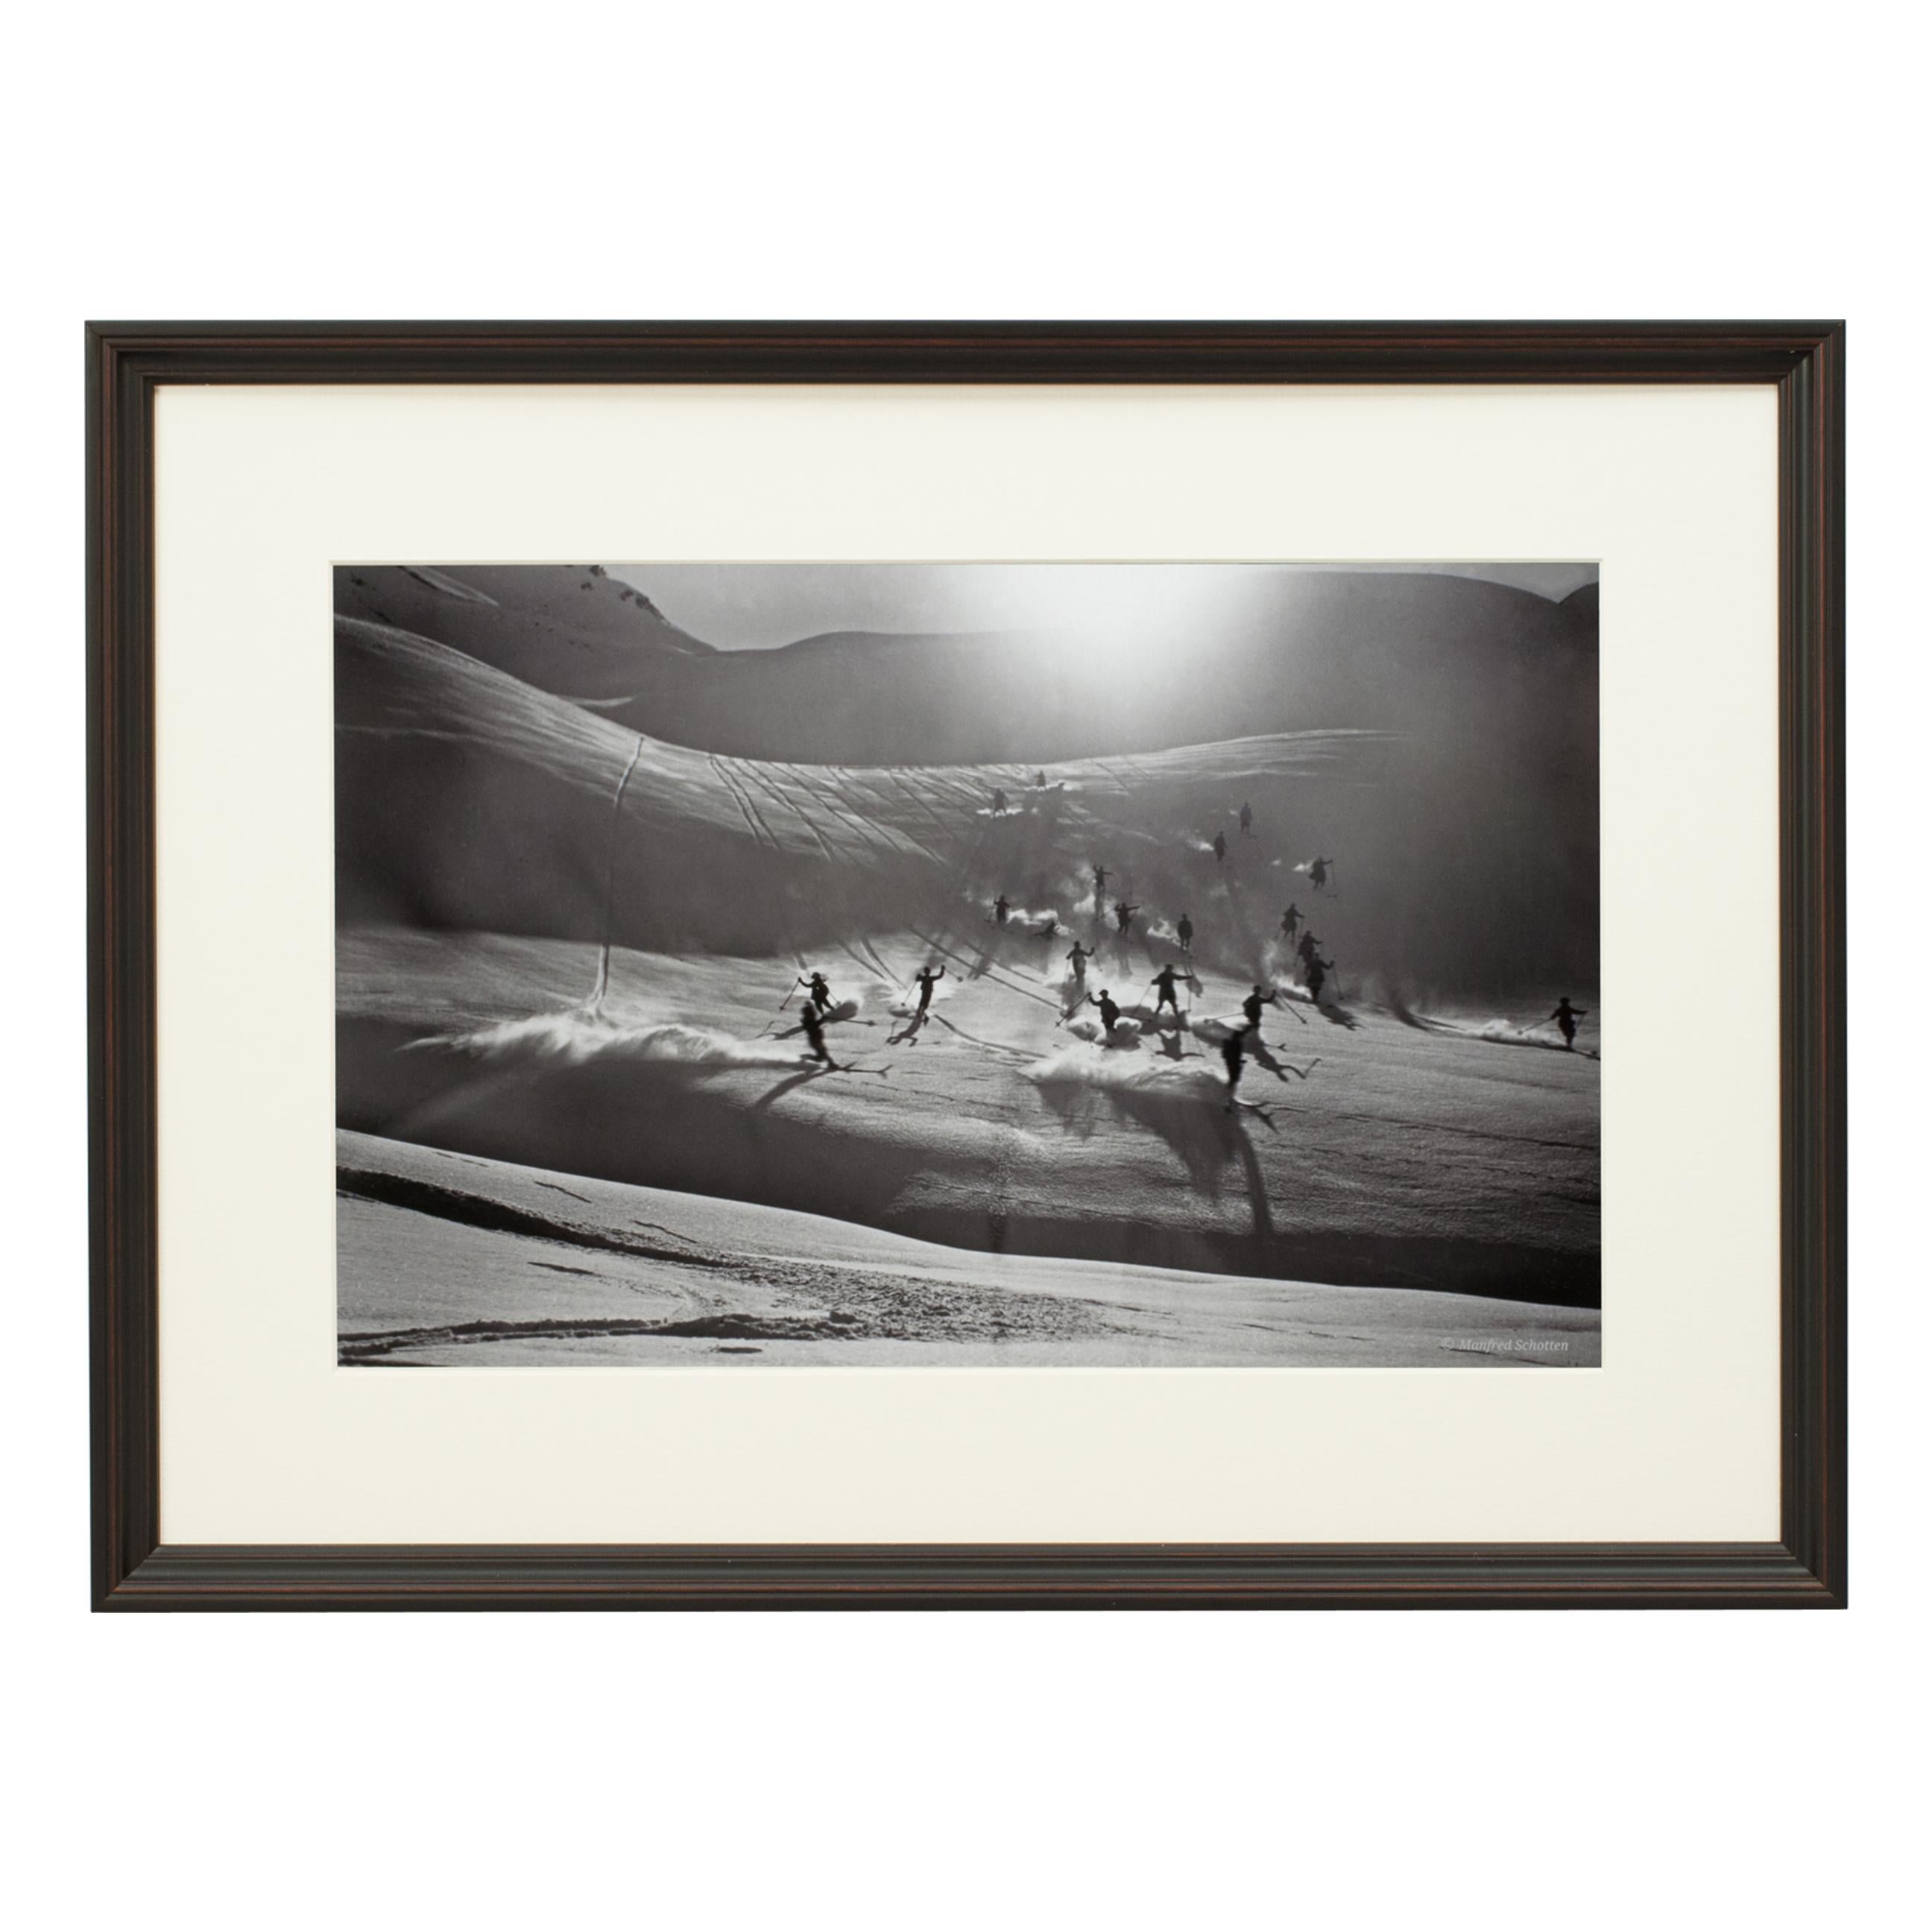 Un ensemble de 25 photographies modernes encadrées et montées en noir et blanc d'après la photographie originale de ski des années 1930. Le cadre est noir avec une sous-couche bordeaux, le vitrage est en verre synthétique premium clarity+. Les